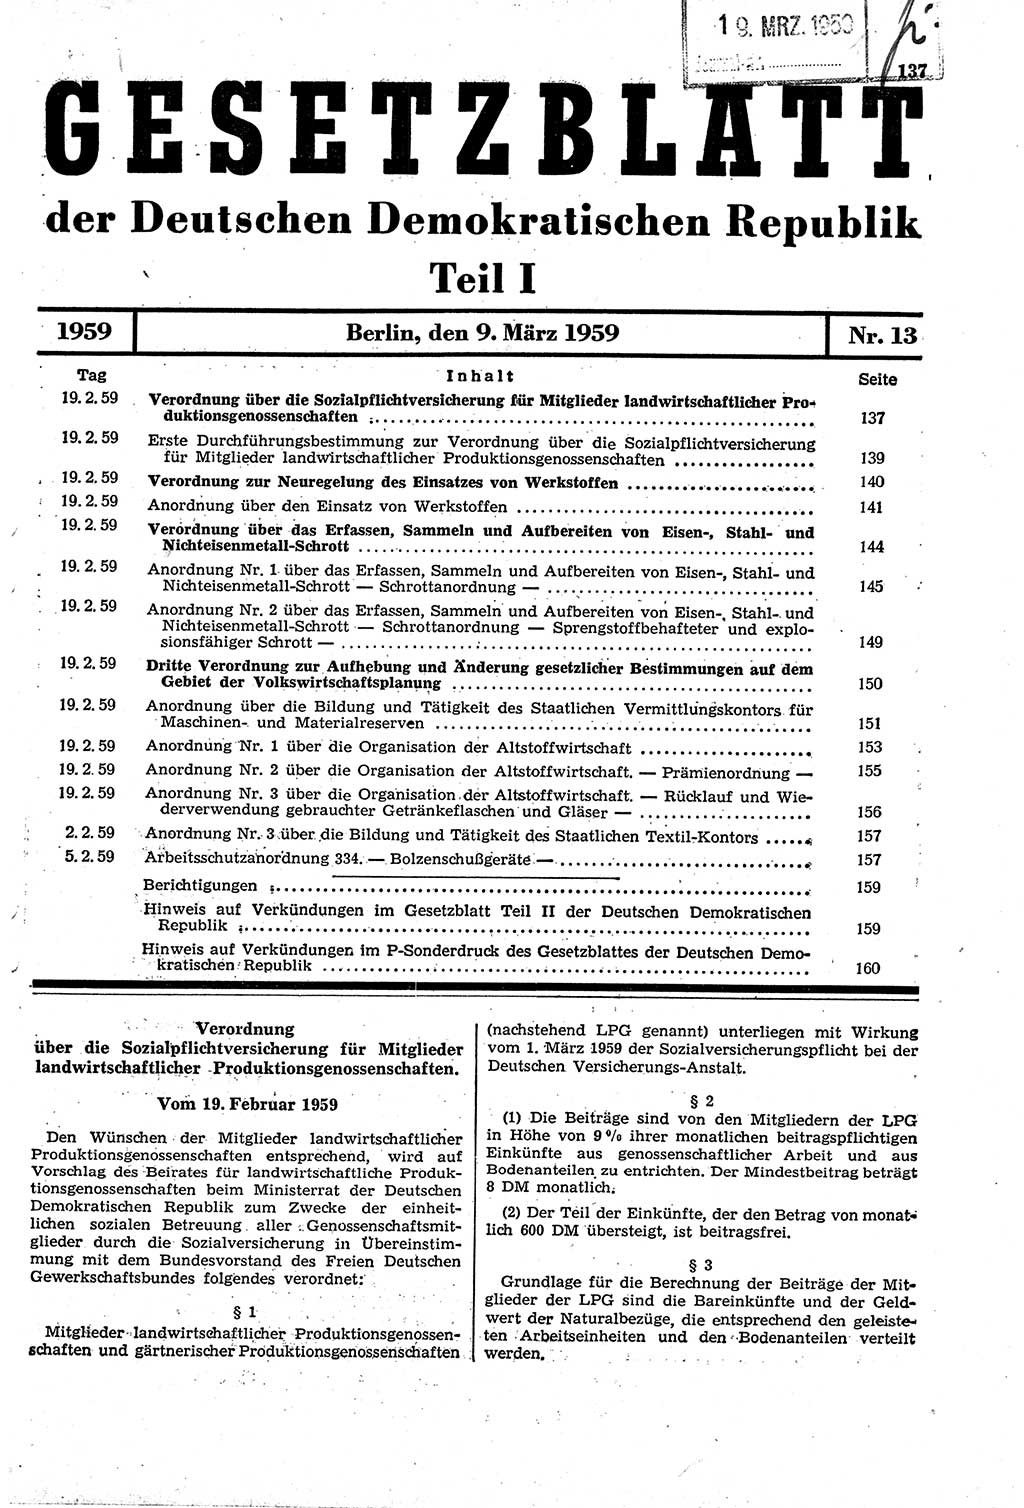 Gesetzblatt (GBl.) der Deutschen Demokratischen Republik (DDR) Teil Ⅰ 1959, Seite 137 (GBl. DDR Ⅰ 1959, S. 137)